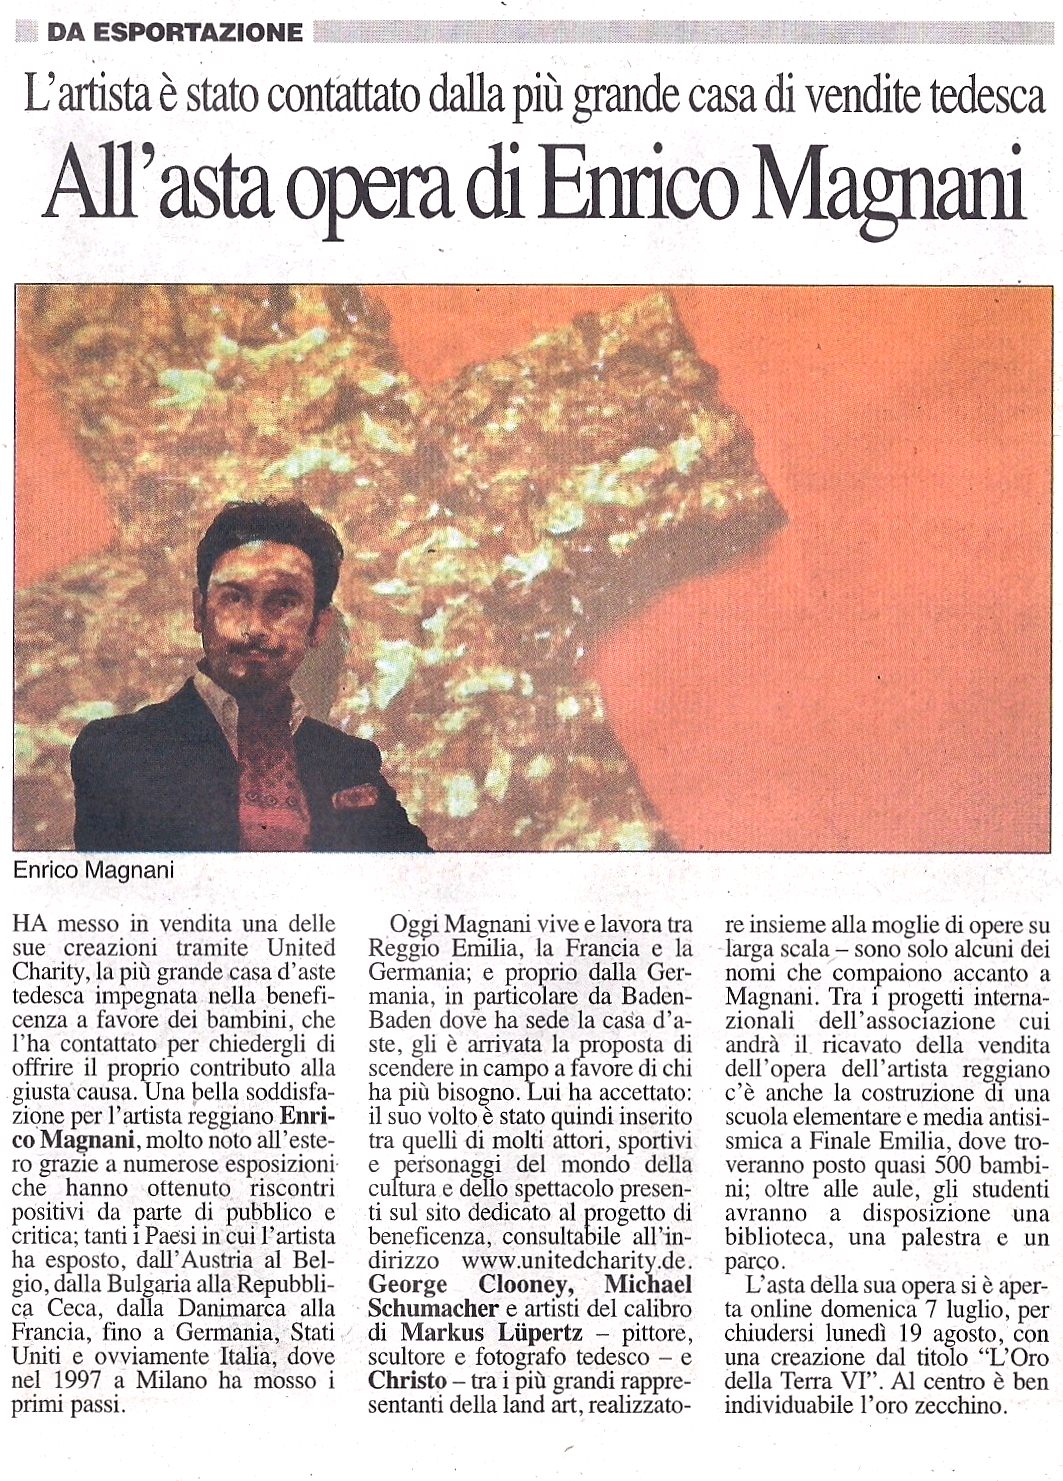 enrico magnani, giornale reggio, united charity